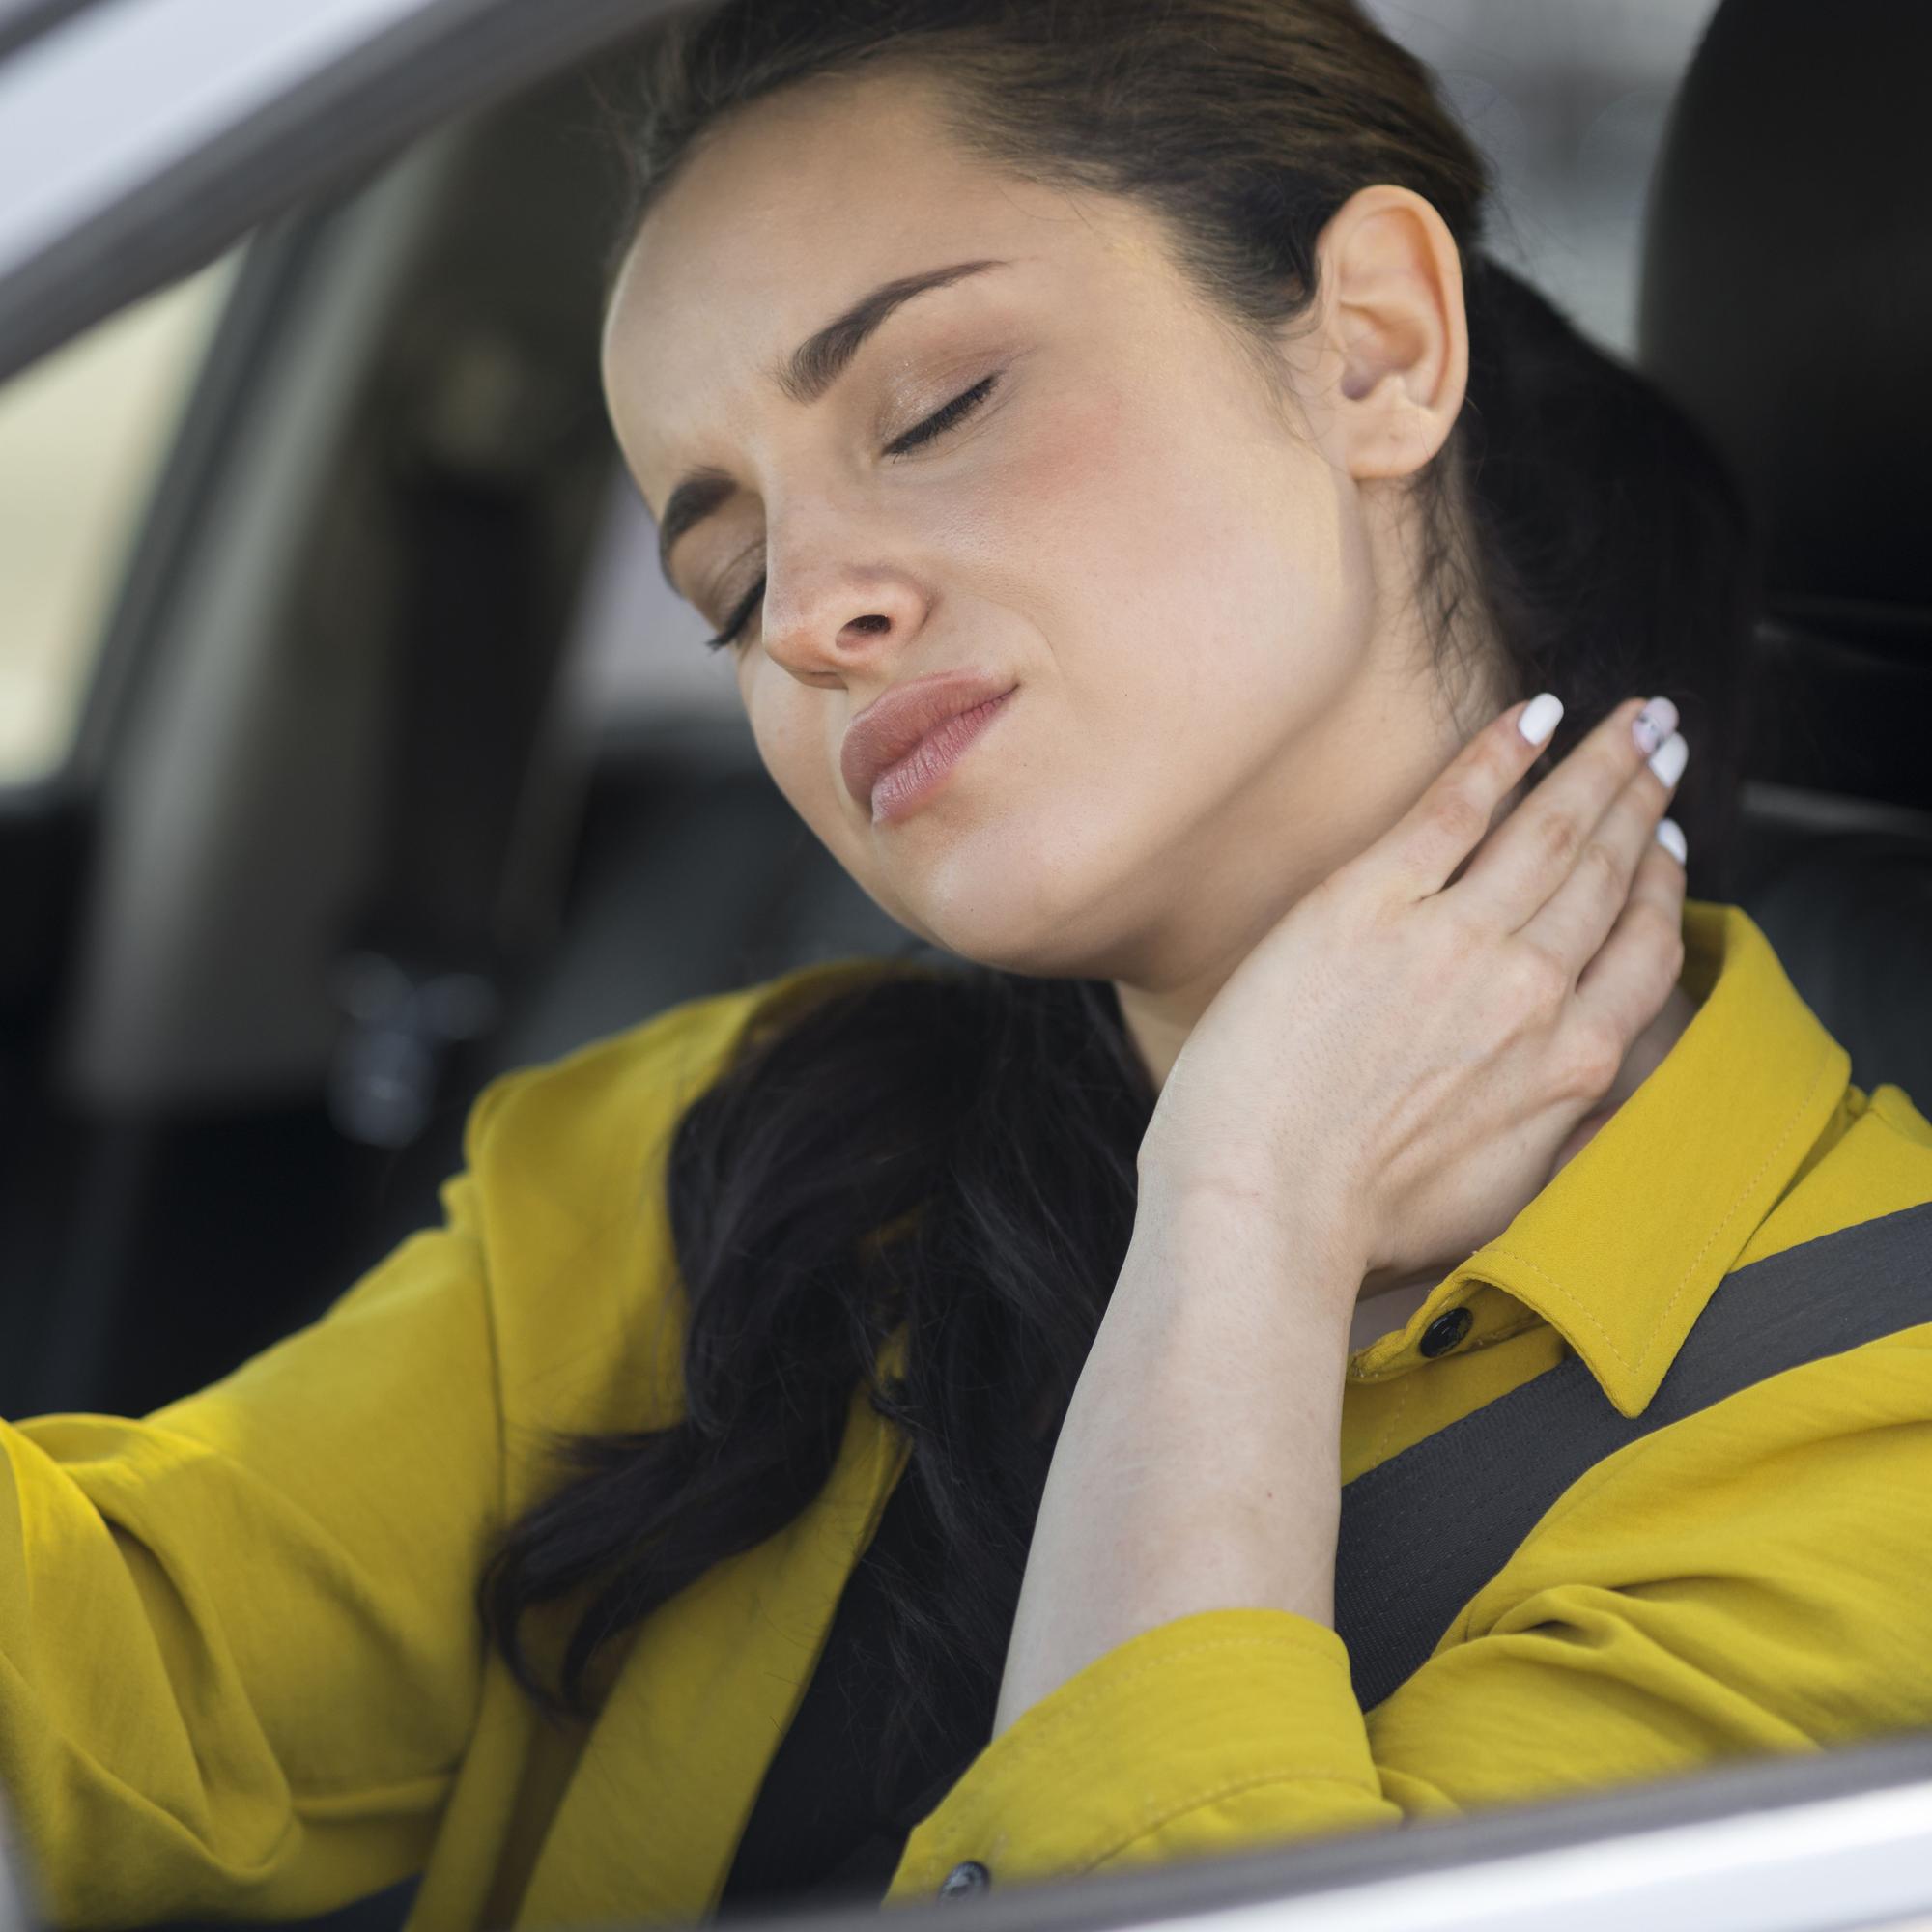 El esguince cervical es una de las lesiones más comunes ante cualquier accidente de tráfico.